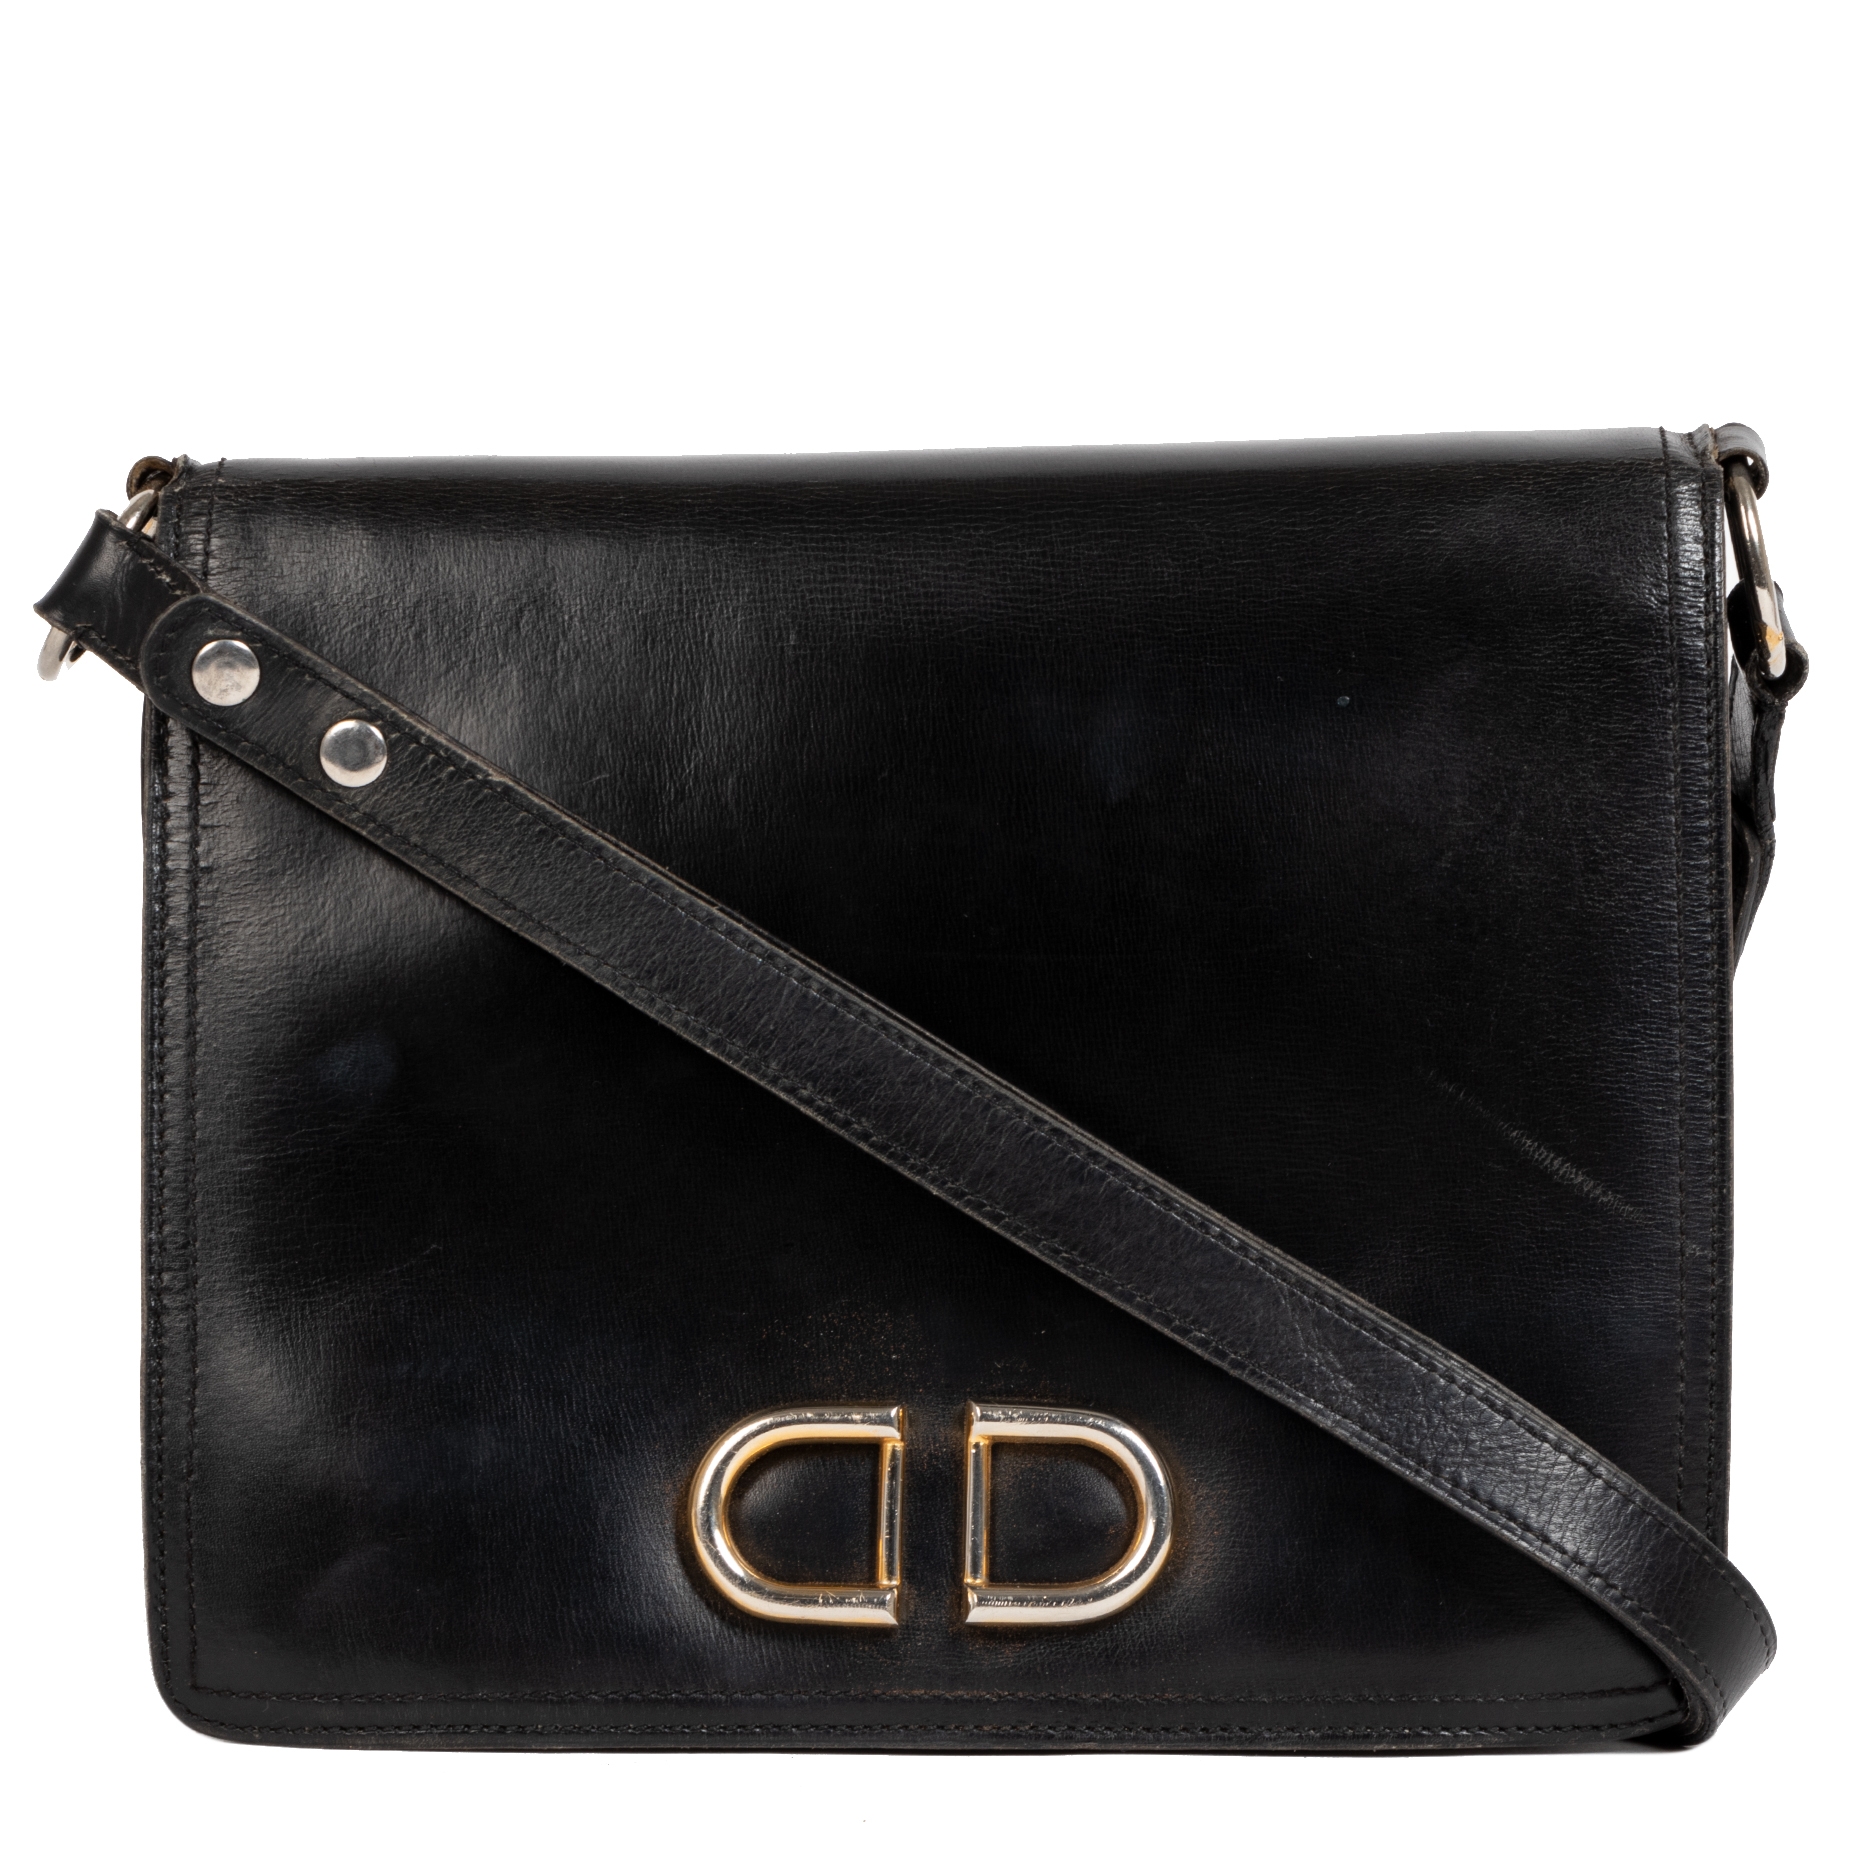 Tempête leather handbag Delvaux Black in Leather - 13754526